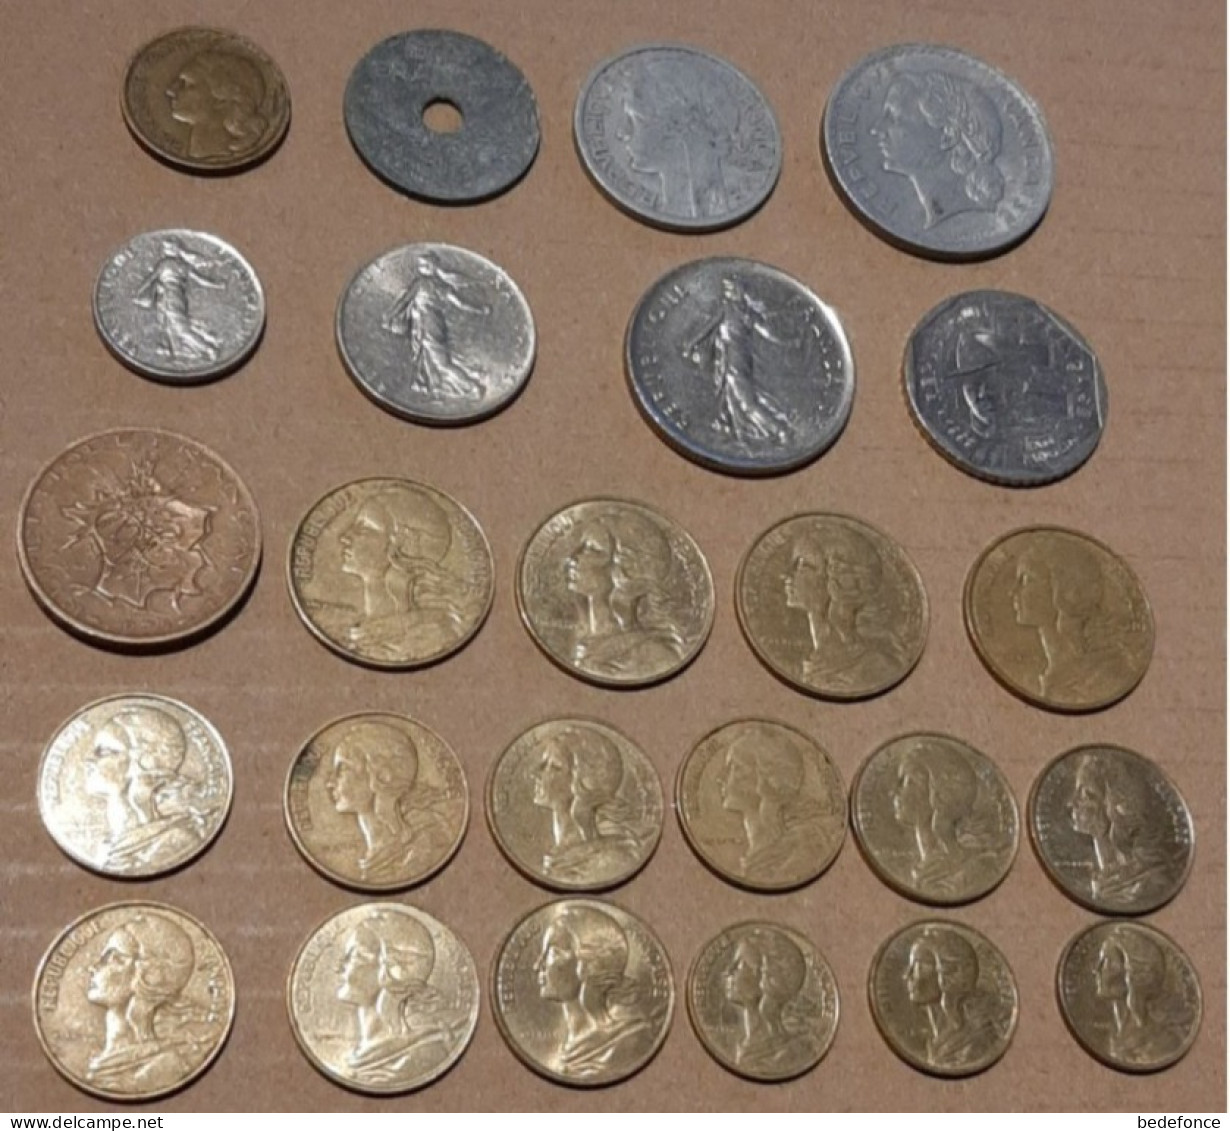 Monnaie - France - Lot De Monnaies Années 1946 à 1997 - Collections